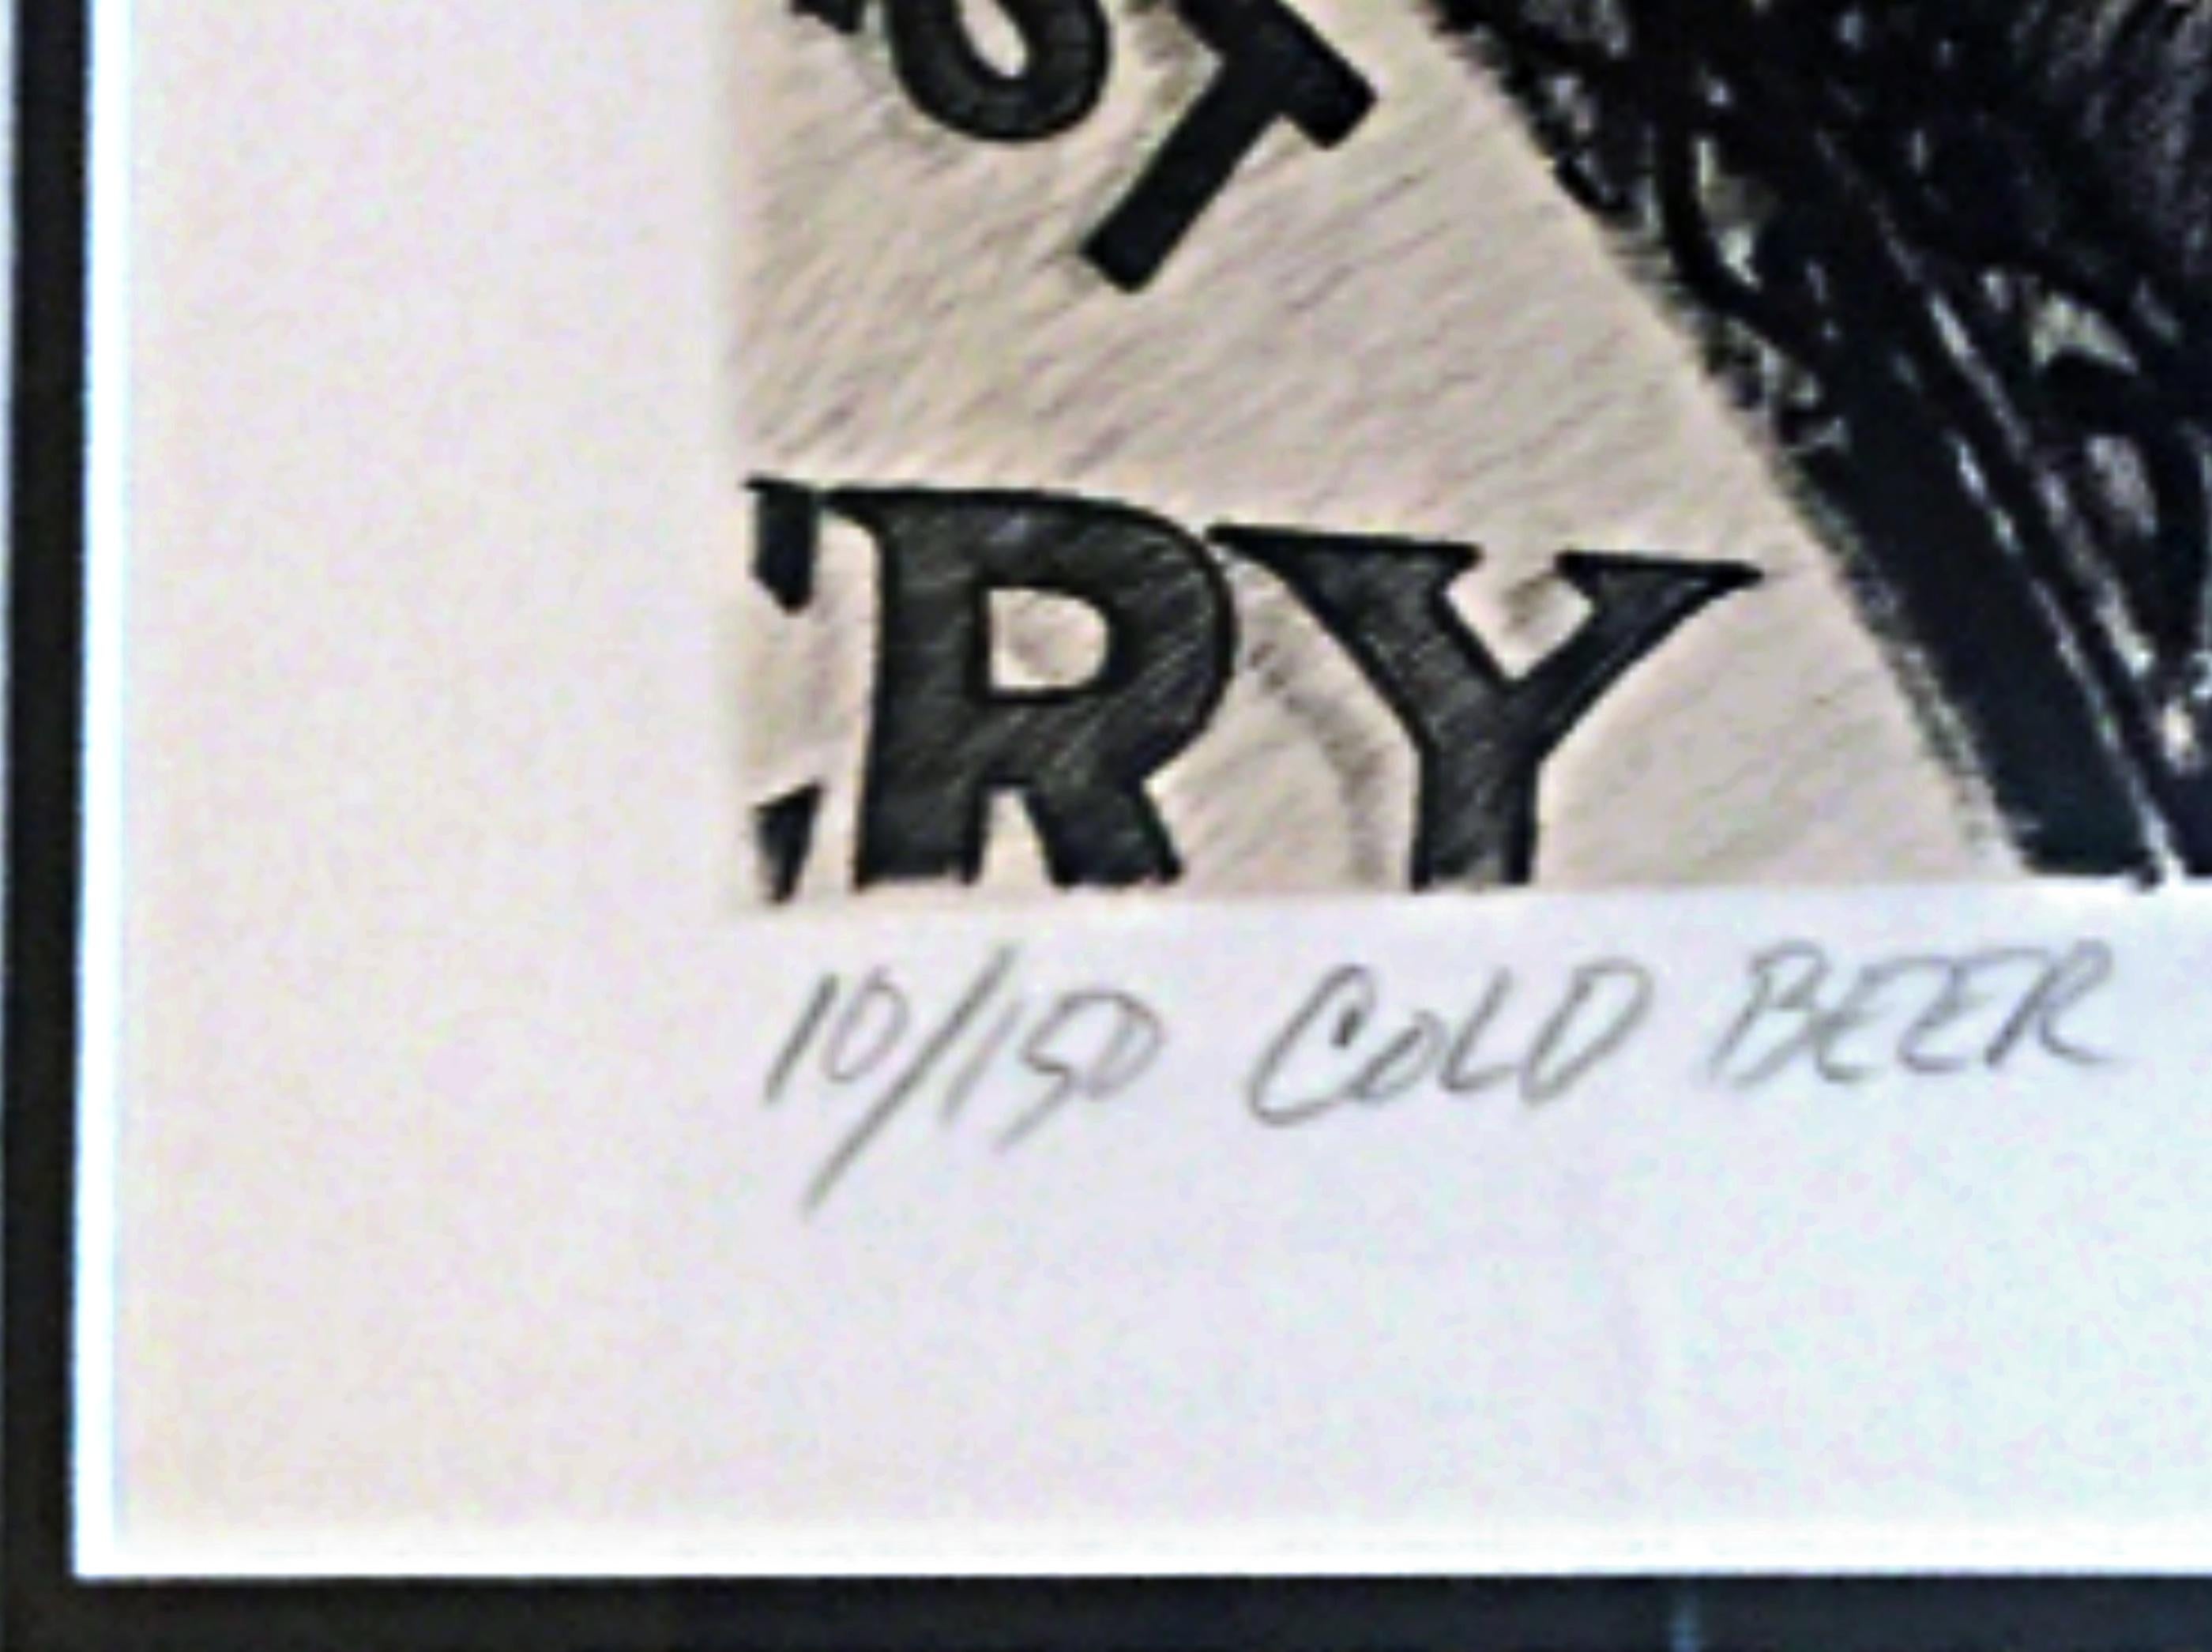 Zweifarbige Offsetlithographie auf Velinpapier 
Auf der Vorderseite mit Bleistift signiert, betitelt und nummeriert aus einer Auflage von 150 Stück
Diese handsignierte, betitelte und nummerierte Lithografie wurde 1977 gedruckt und 1980